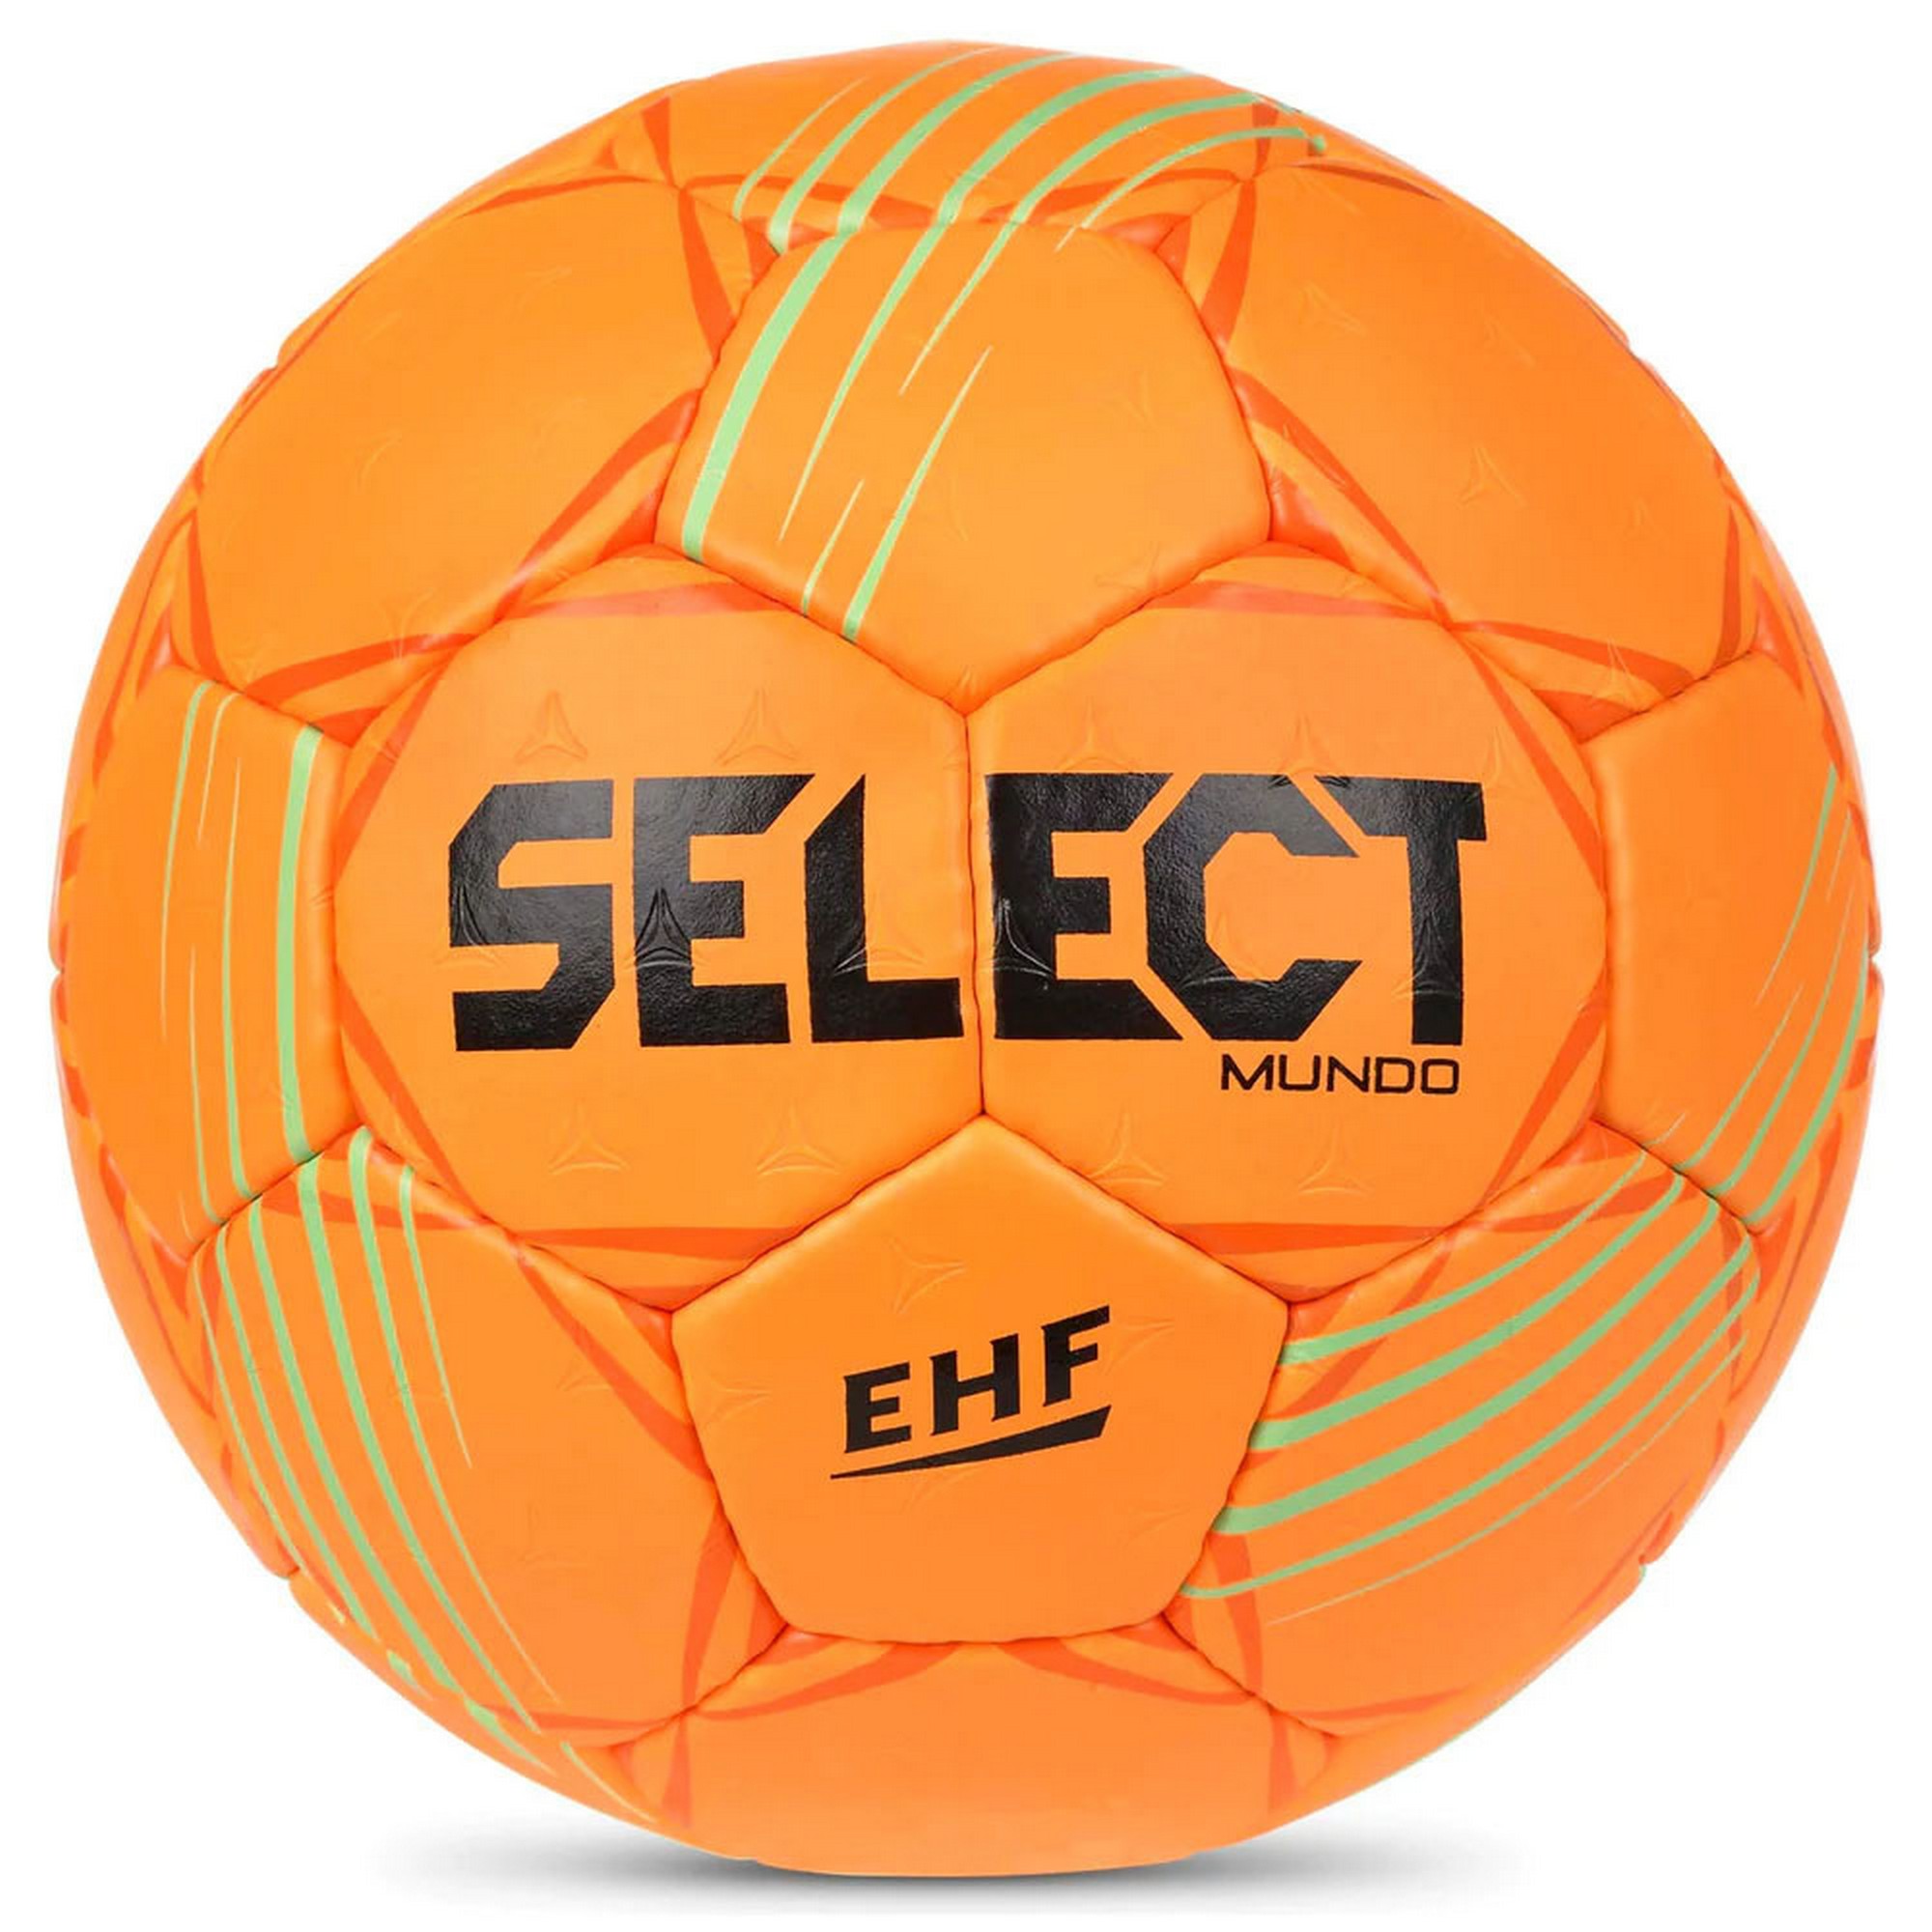   Select Mundo V22 1662858666 .3, EHF Appr